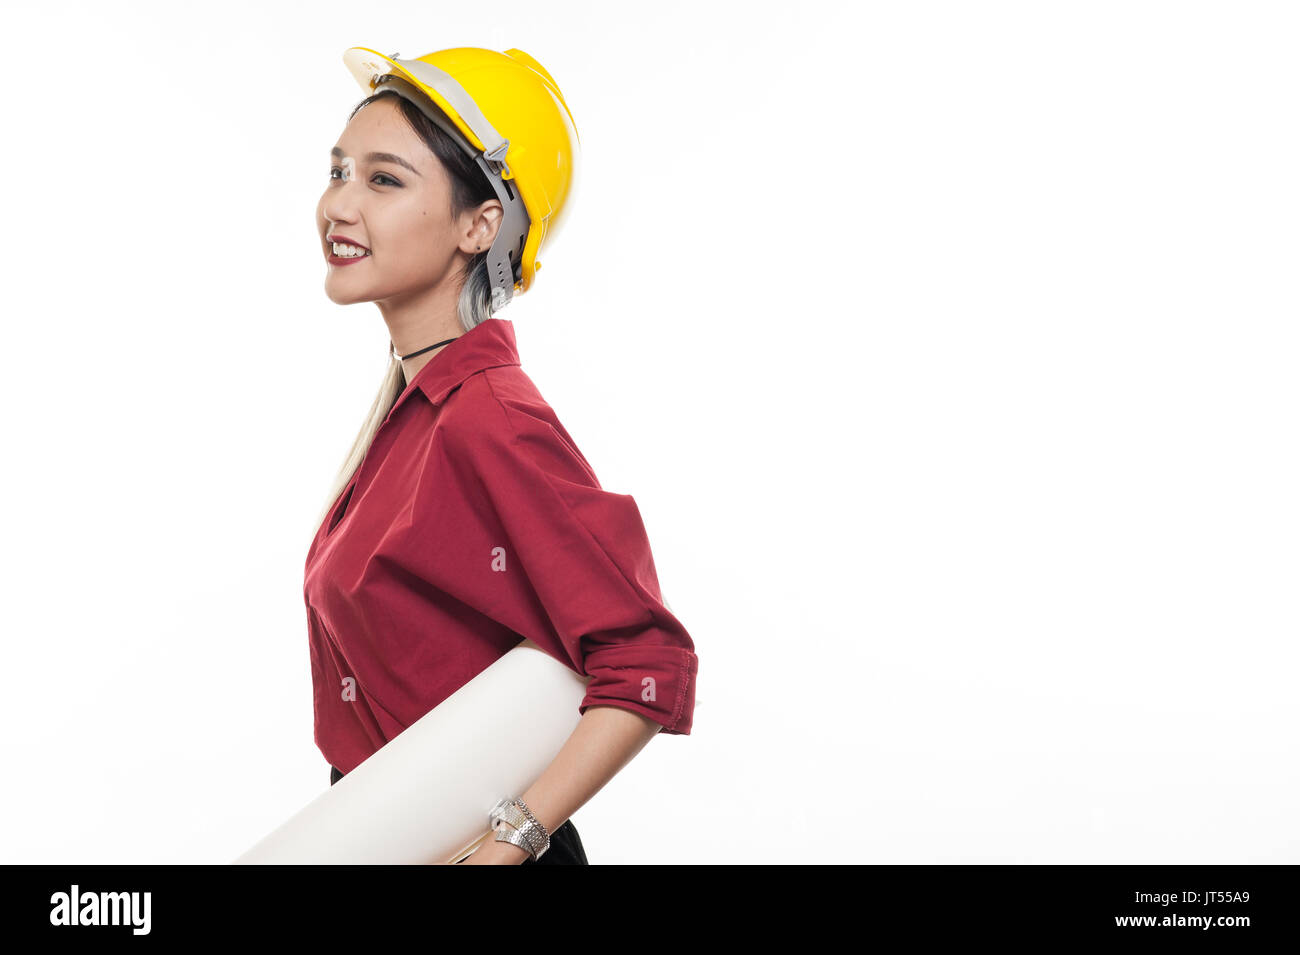 Joven mujer asiática arquitecto con camiseta roja y casco de seguridad amarillo sonriendo mientras transportaba blueprint papeles. La ocupación industrial las personas concepto Foto de stock